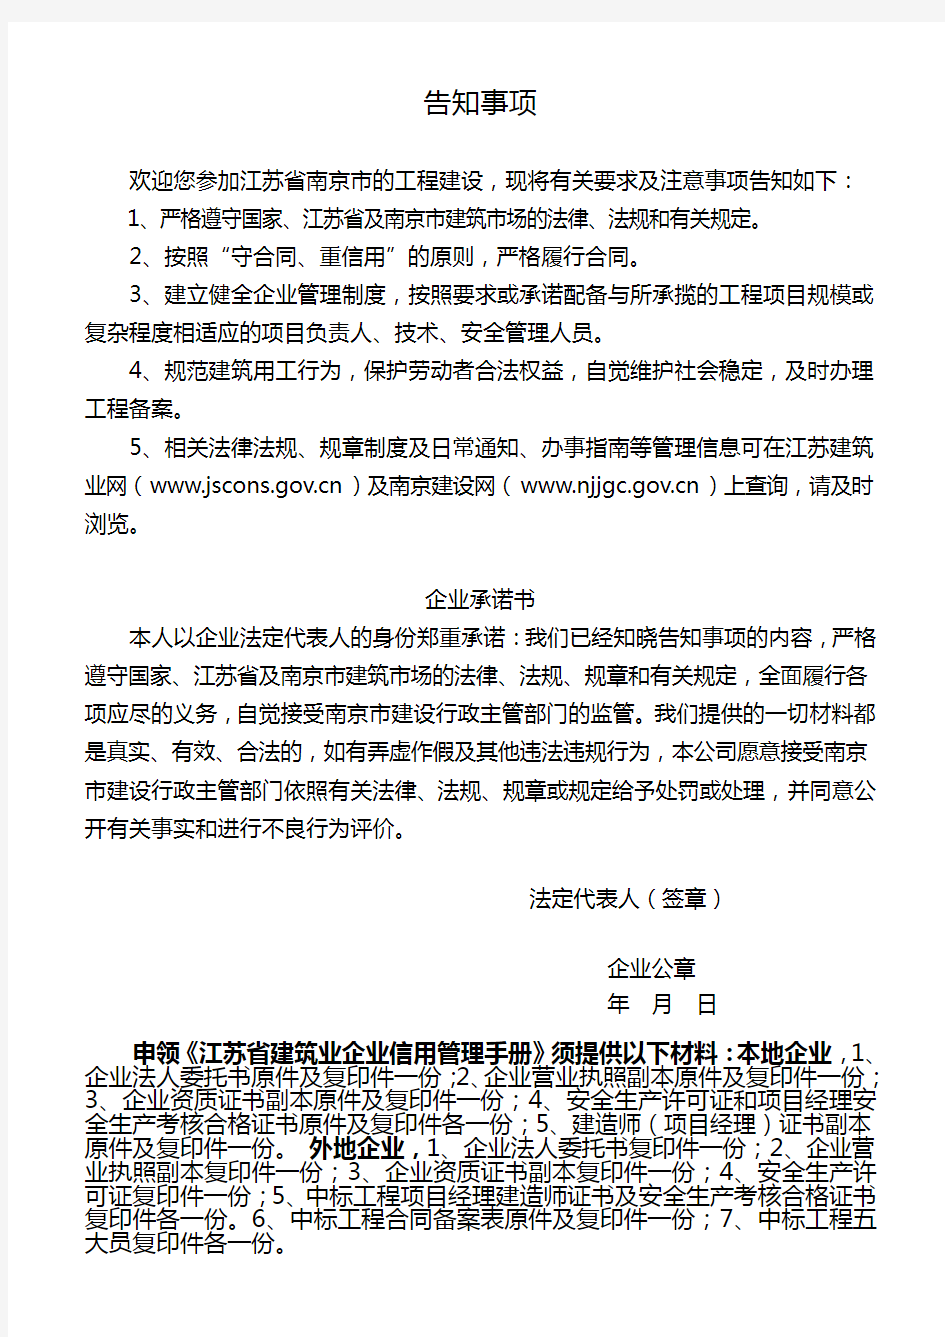 《江苏省建筑业企业信用管理手册》申领登记表